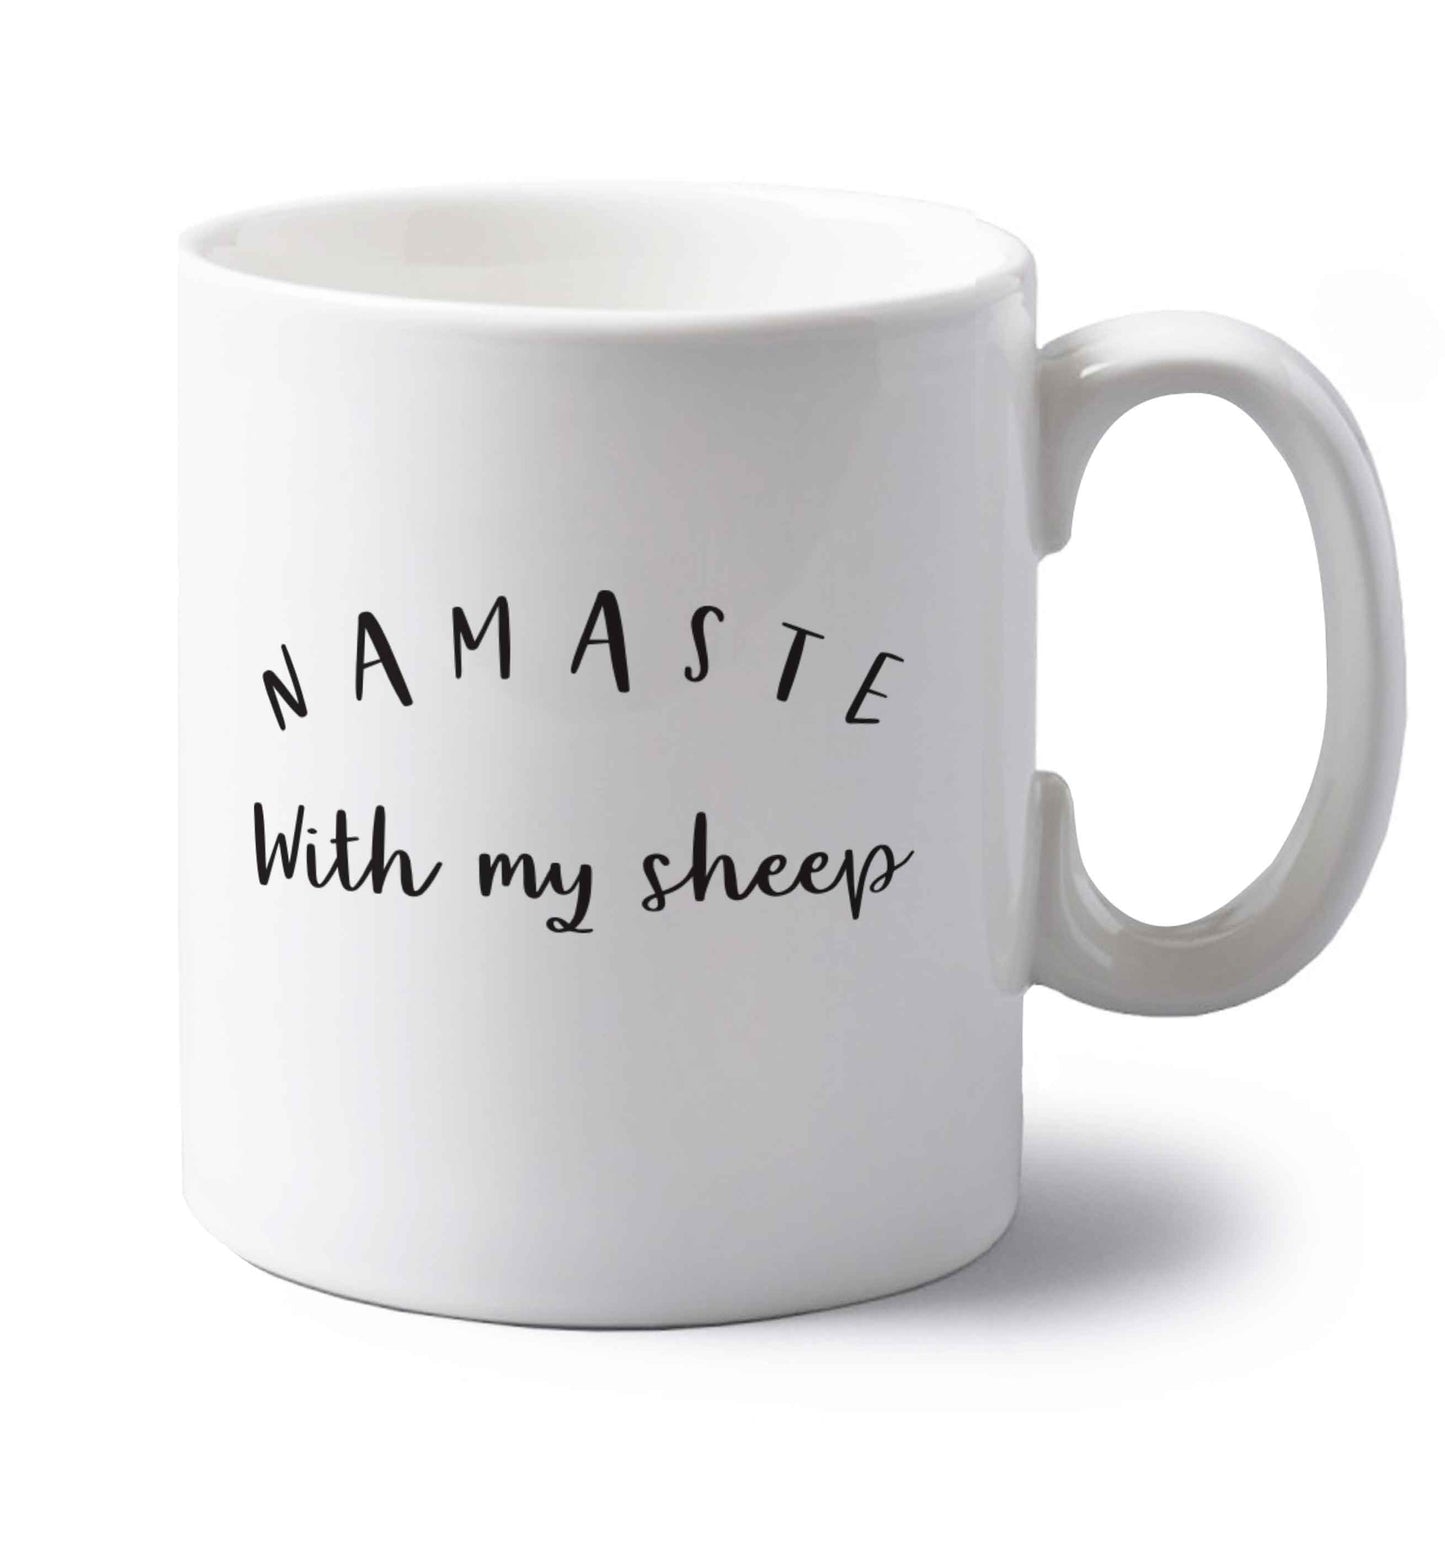 Namaste with my sheep left handed white ceramic mug 